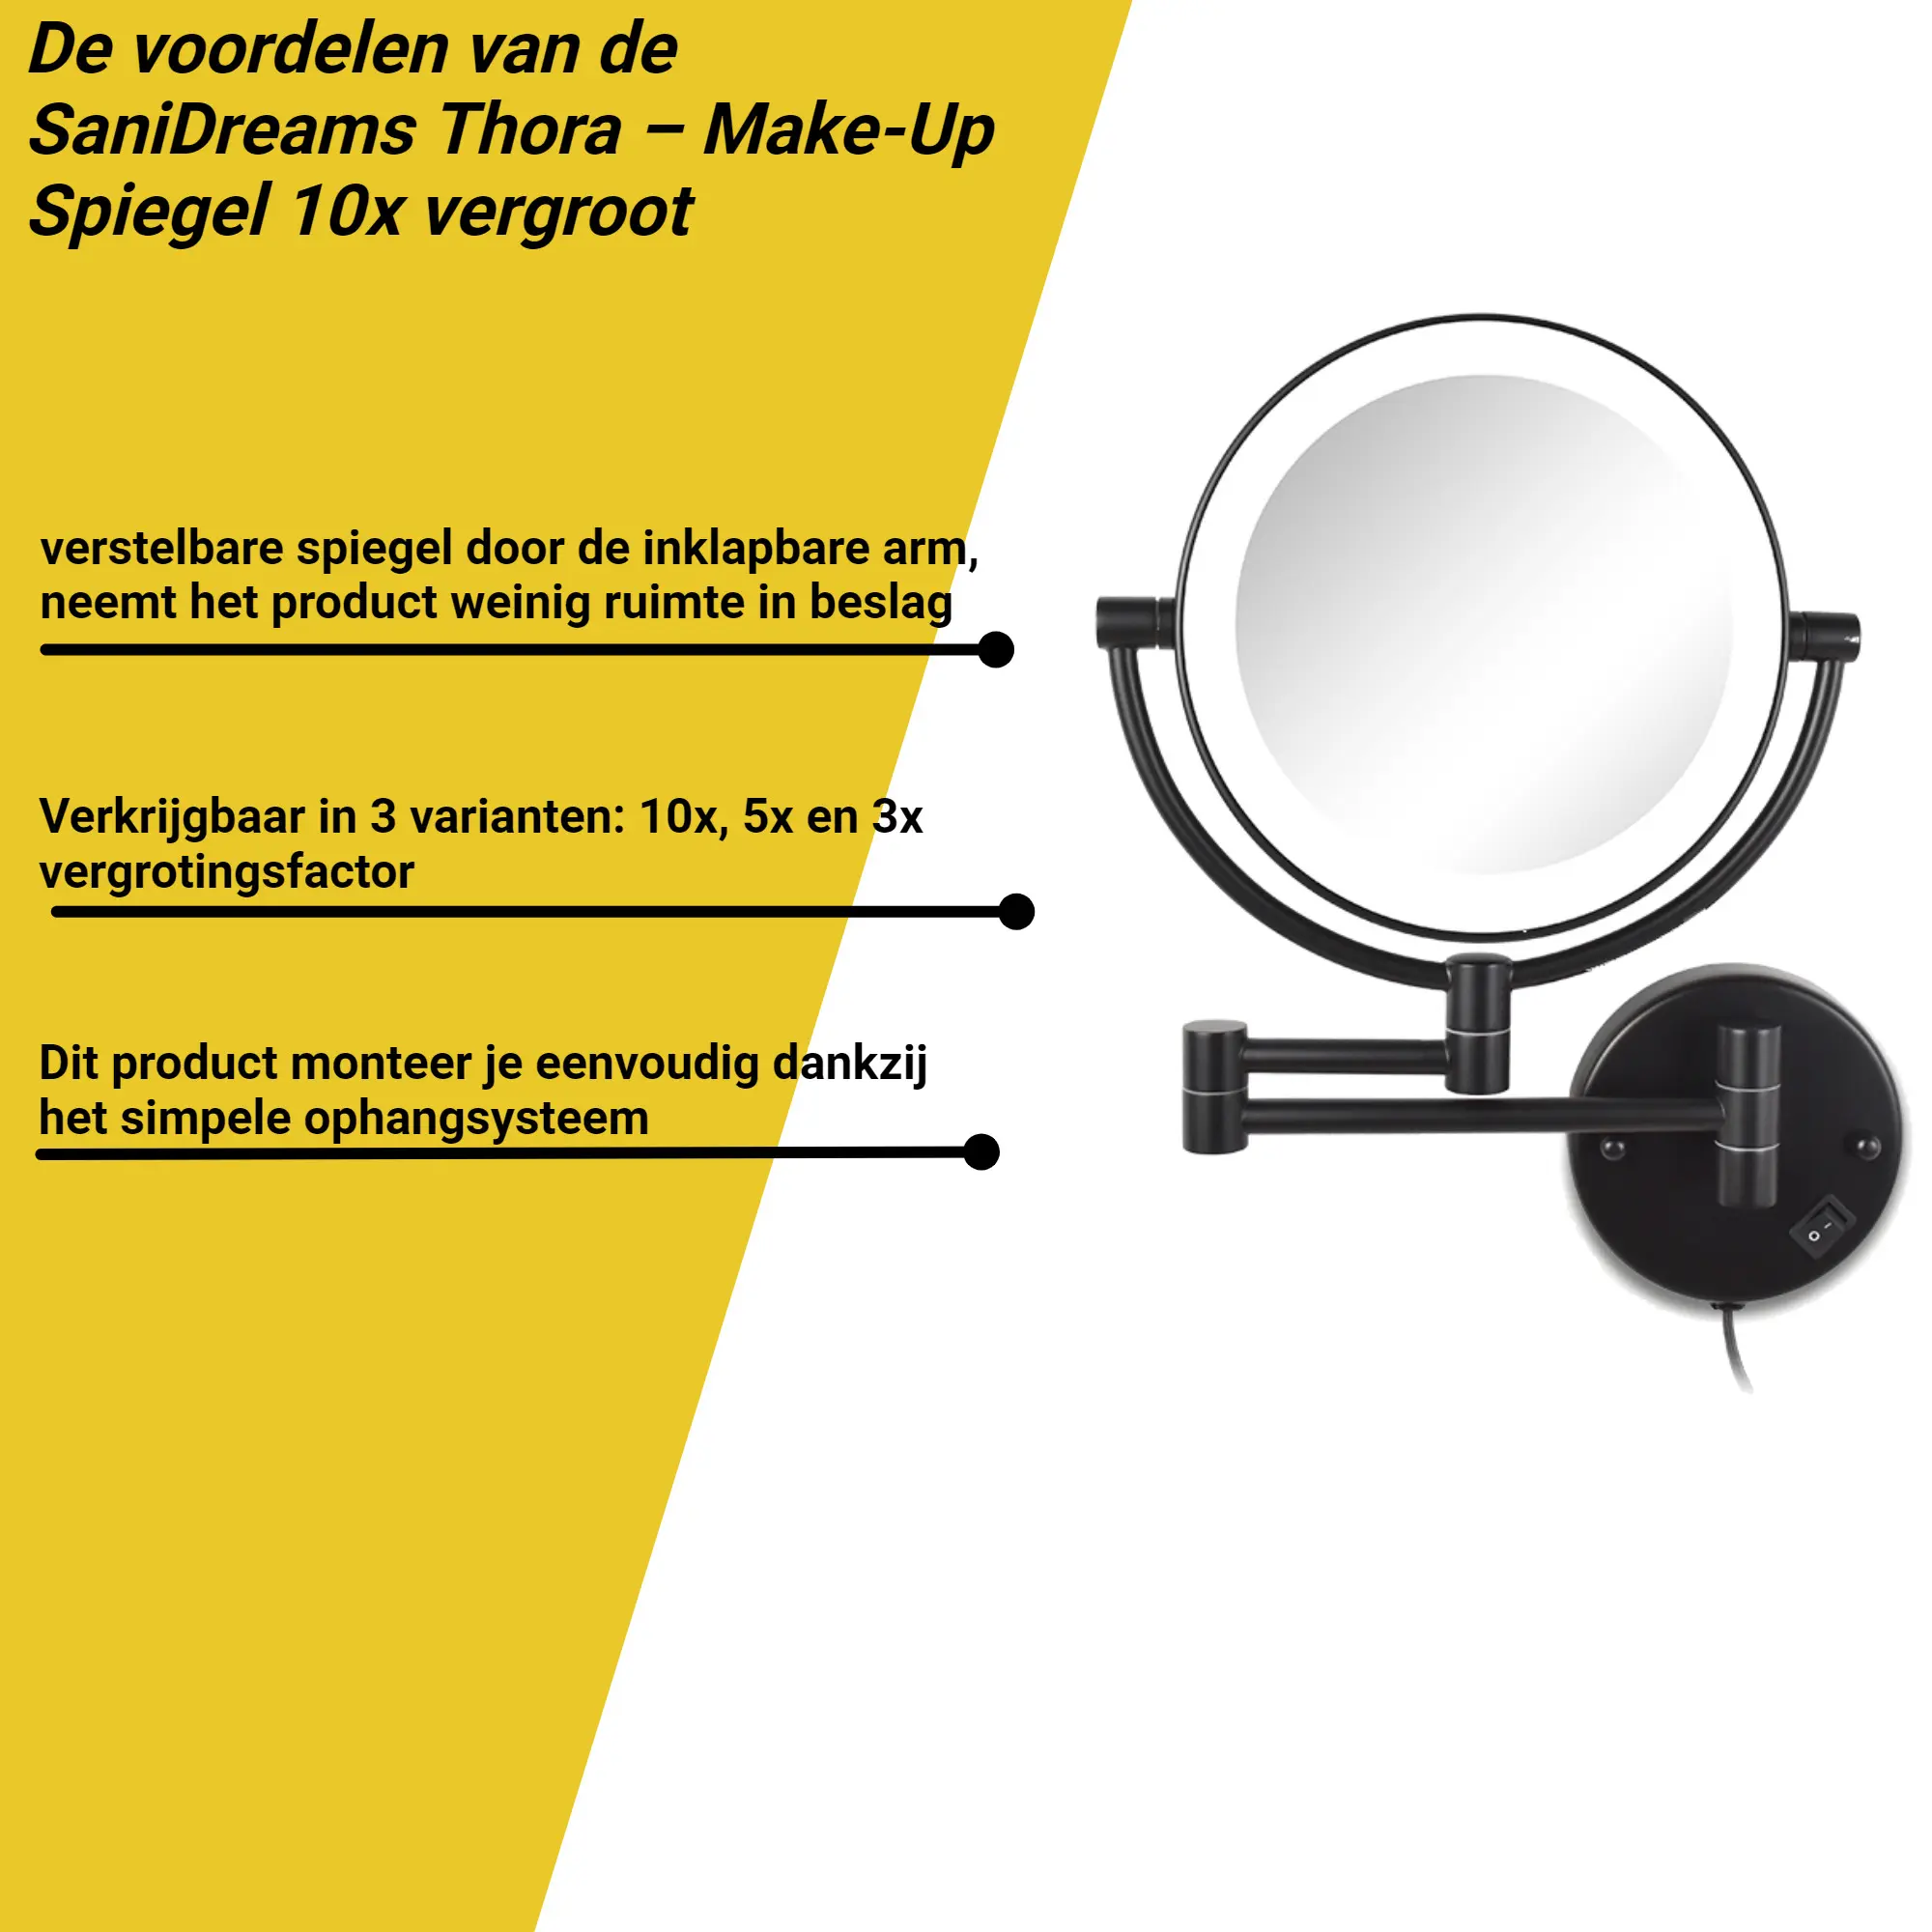 Conform Lee Opgewonden zijn SaniDreams Thora - Make-up spiegel 10x vergroot - Steelparts